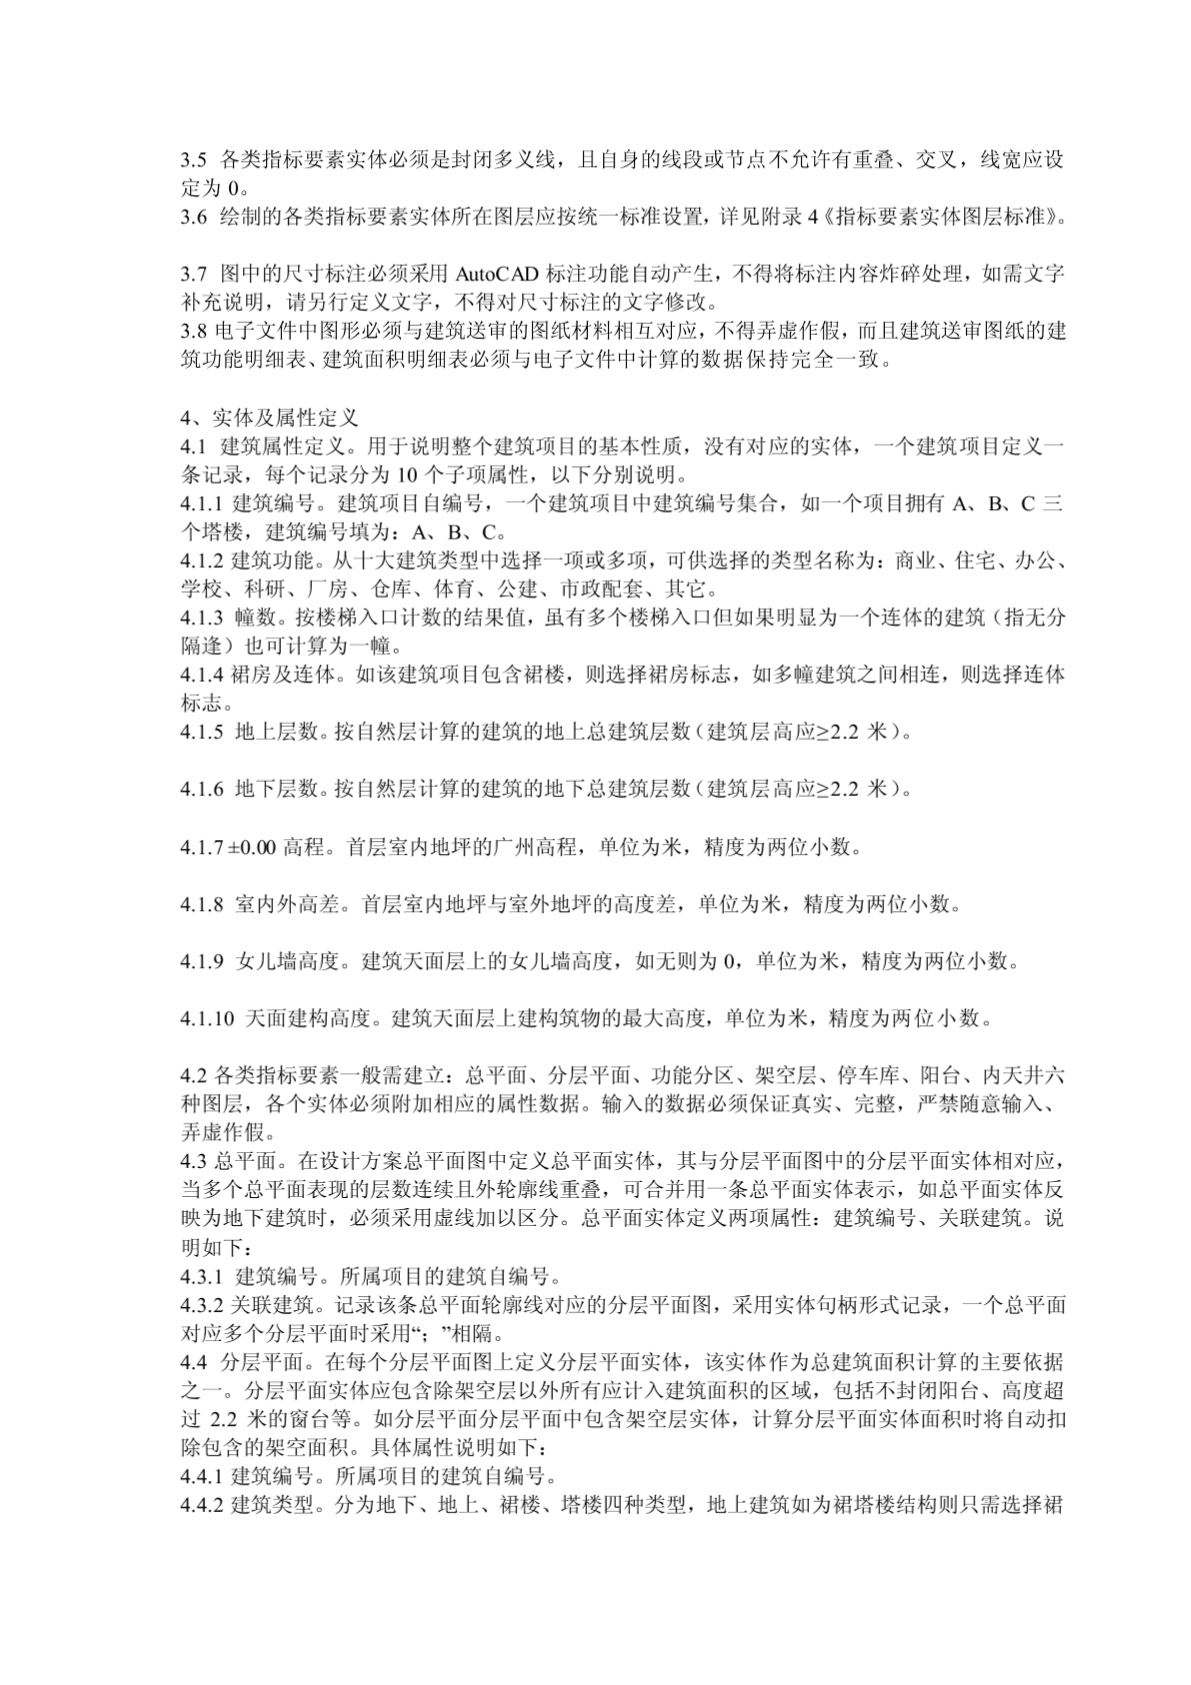 [知识]广州城市规划局建筑工程电子报批技术指引-图一